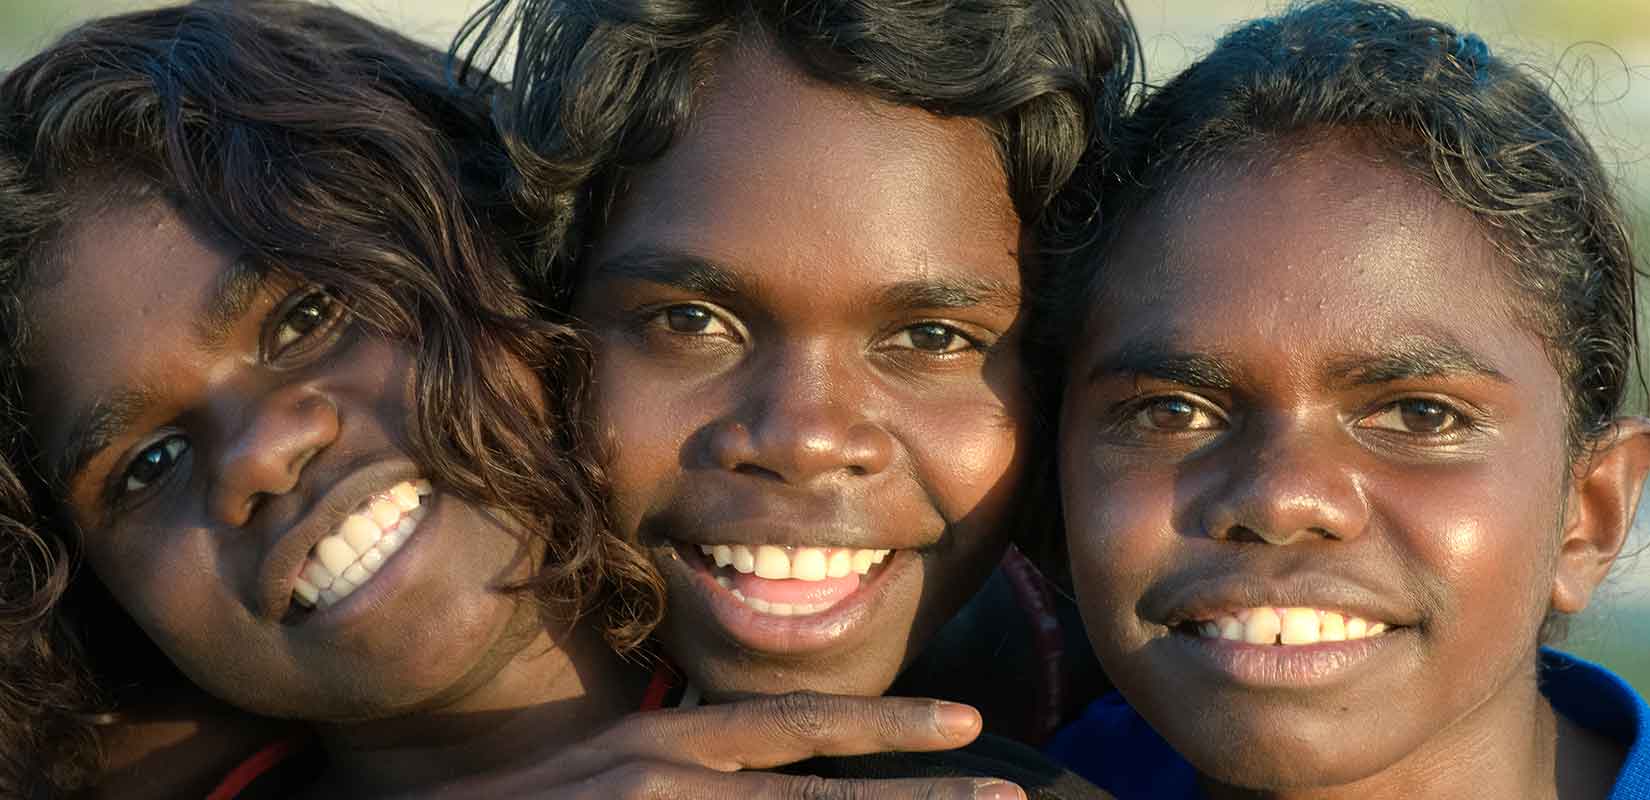 Лицо негроидной расы. Австралоиды океанийская раса. Австралоиды (аборигены Австралии). Меланезийская раса австралоидная. Экваториальная раса (Негро-австралоидная).